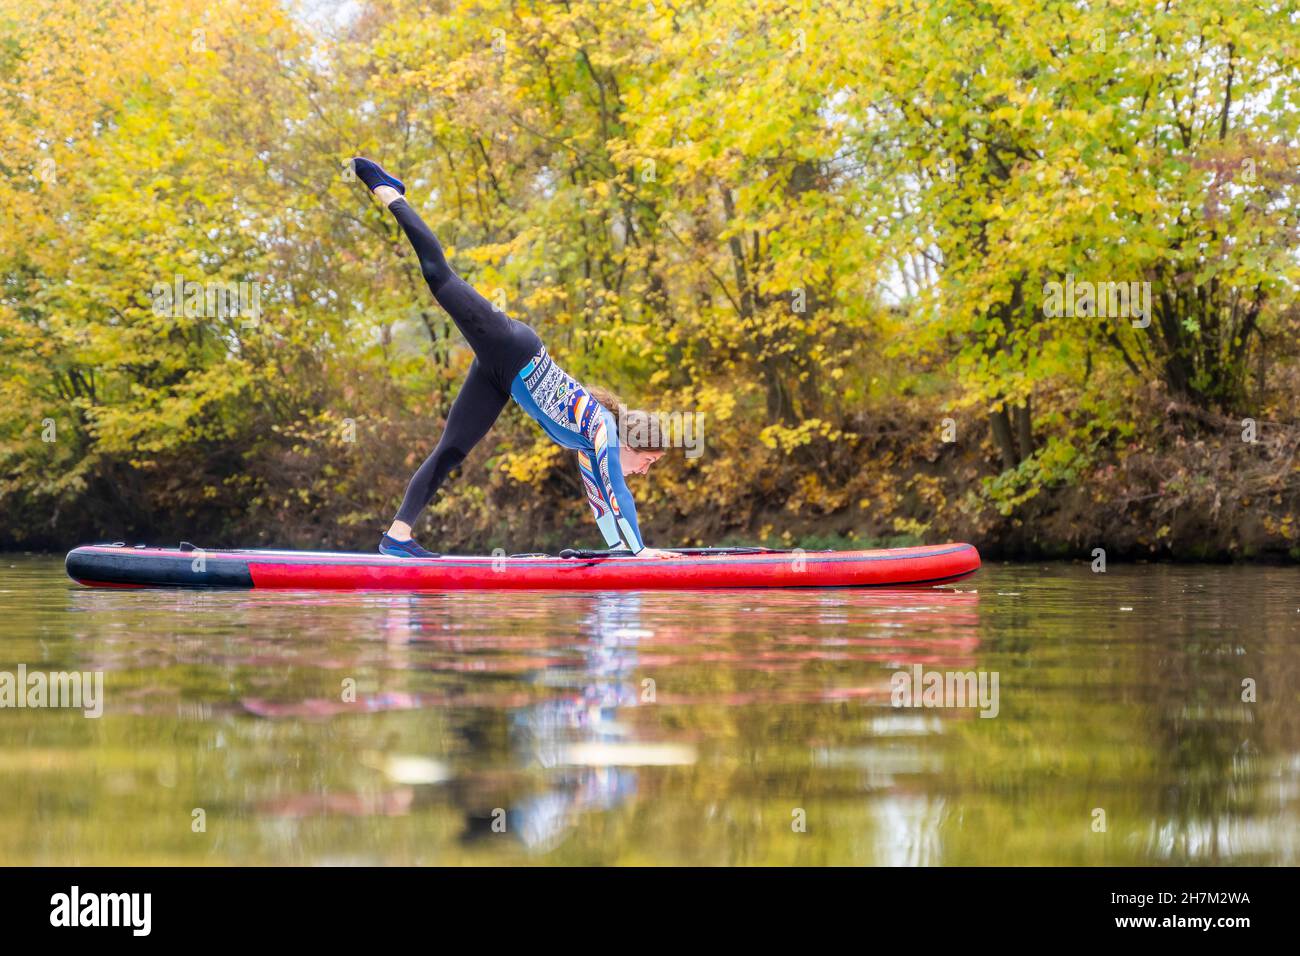 Sportlerin, die am Rems Fluss, Baden-Württemberg, Yoga auf dem Paddleboard praktiziert Stockfoto